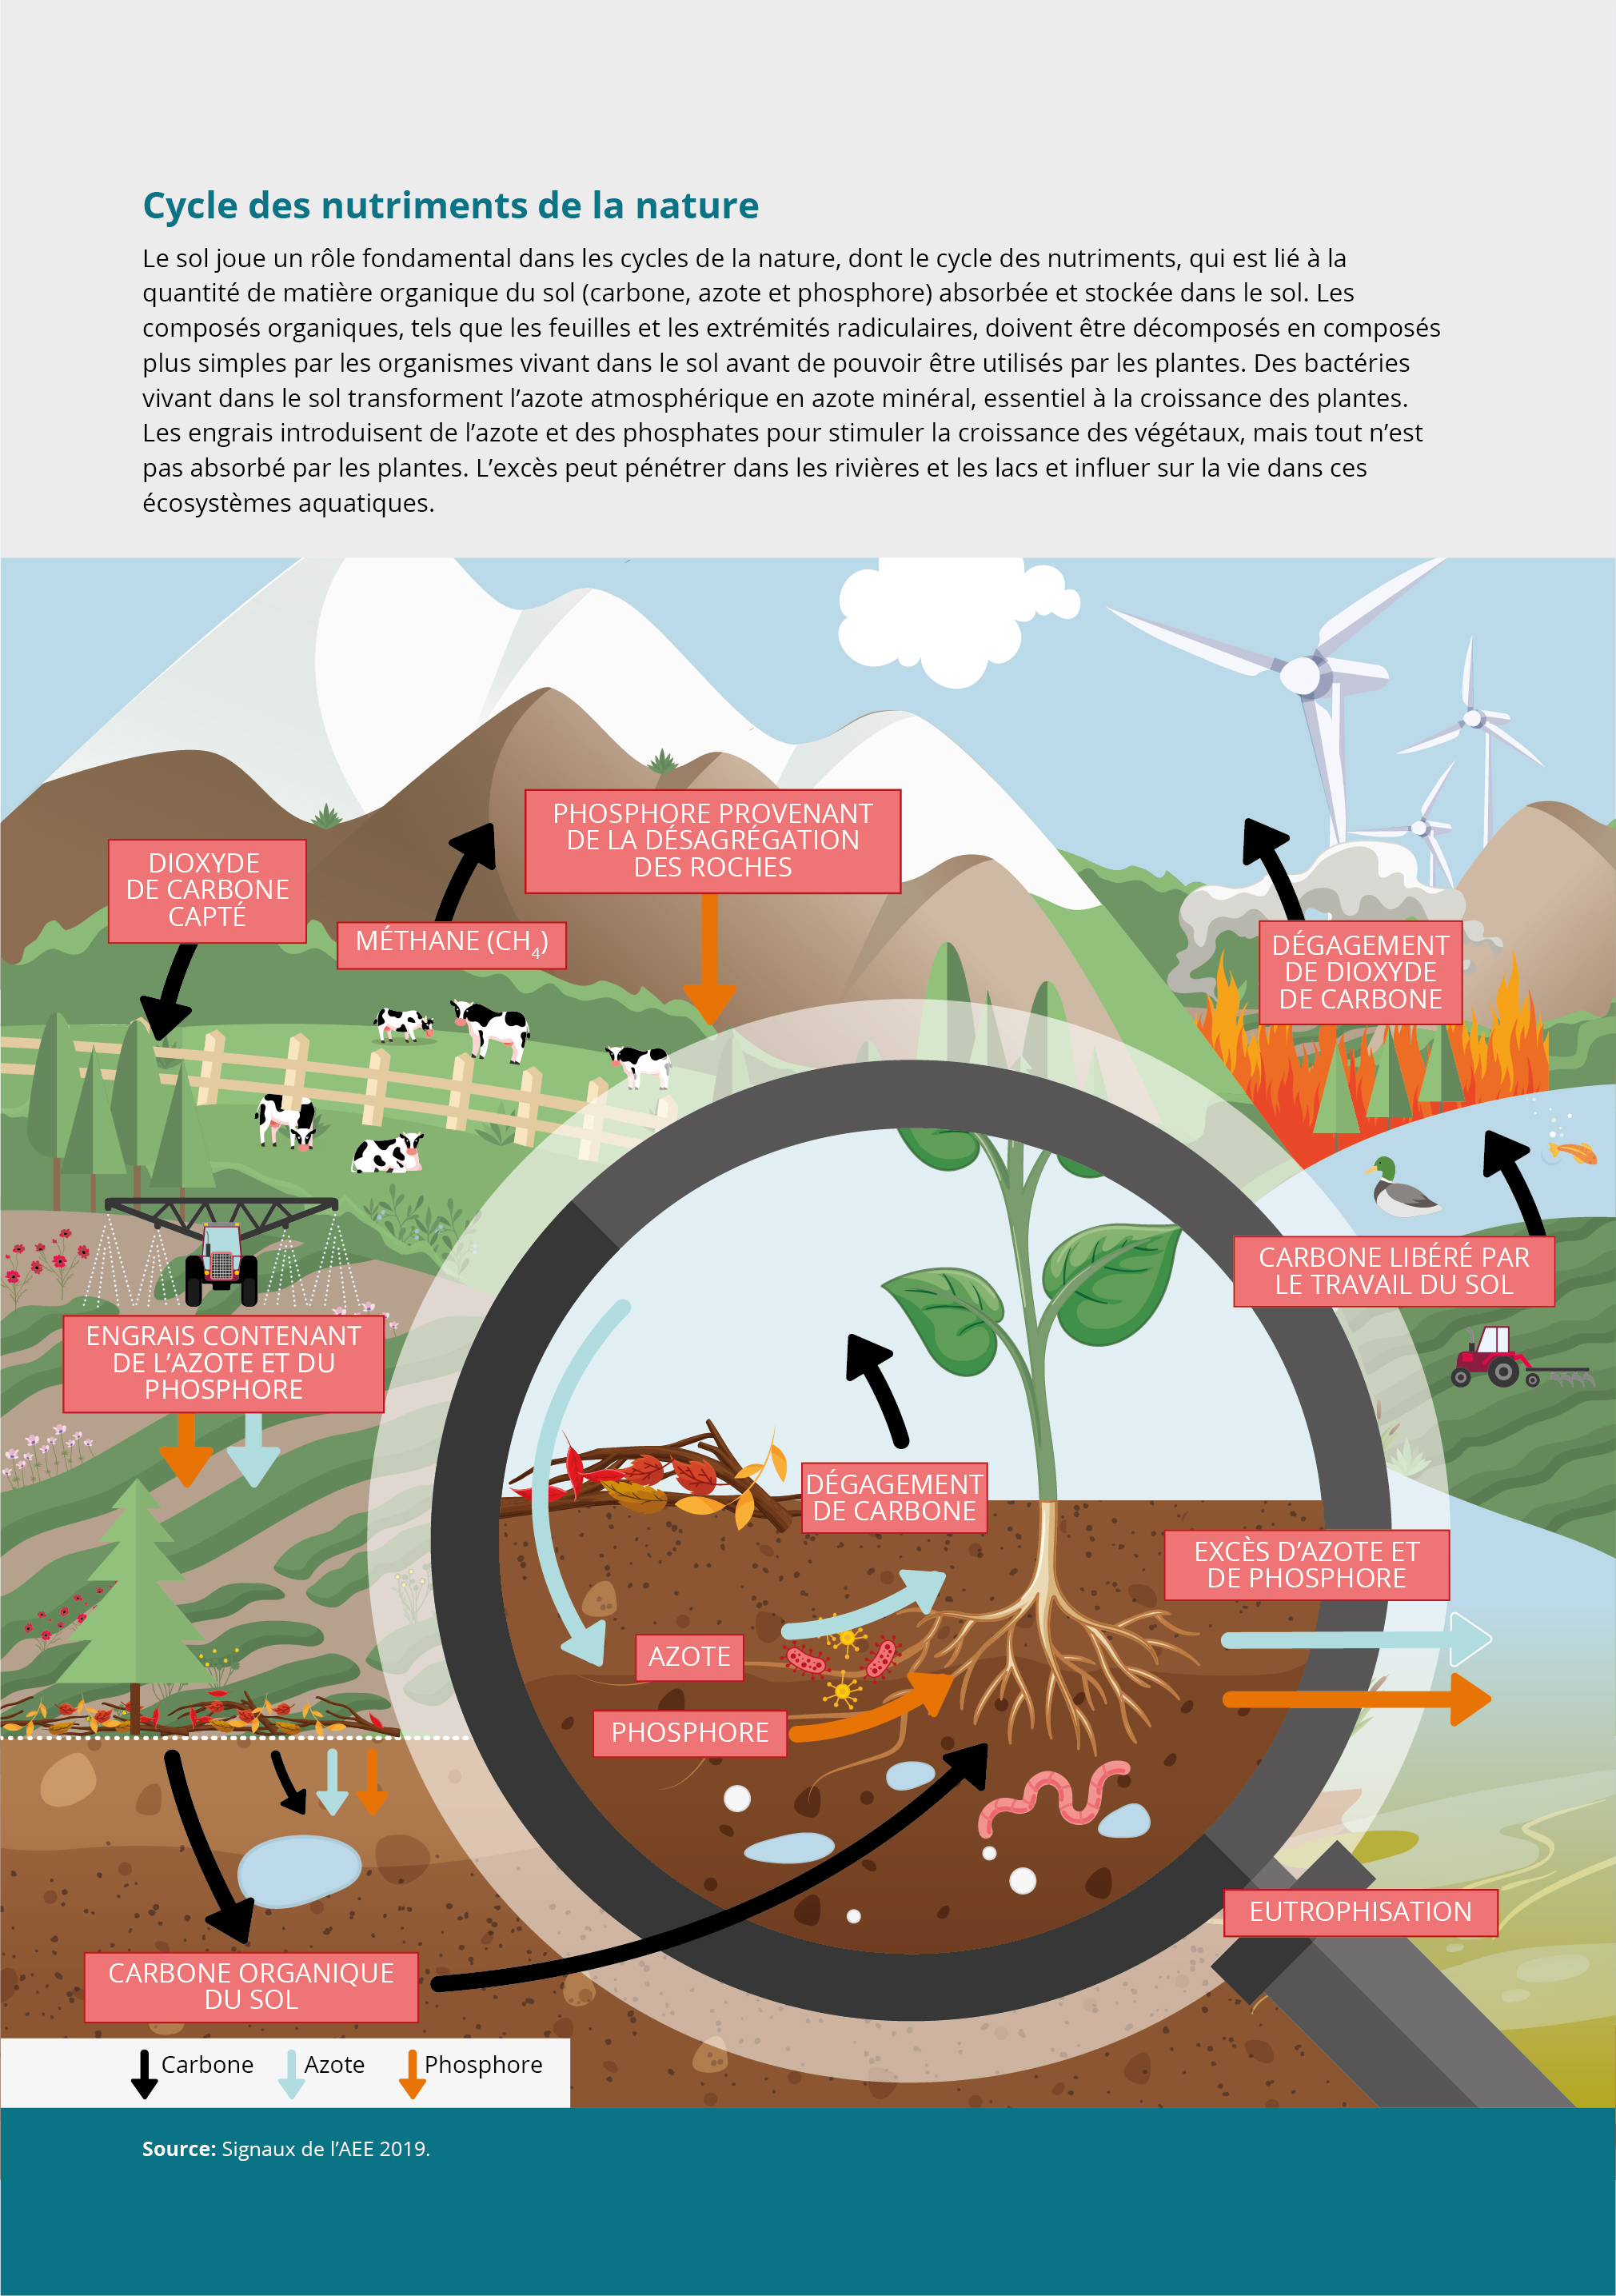 Cycle des nutriments de la nature — Agence européenne pour l'environnement